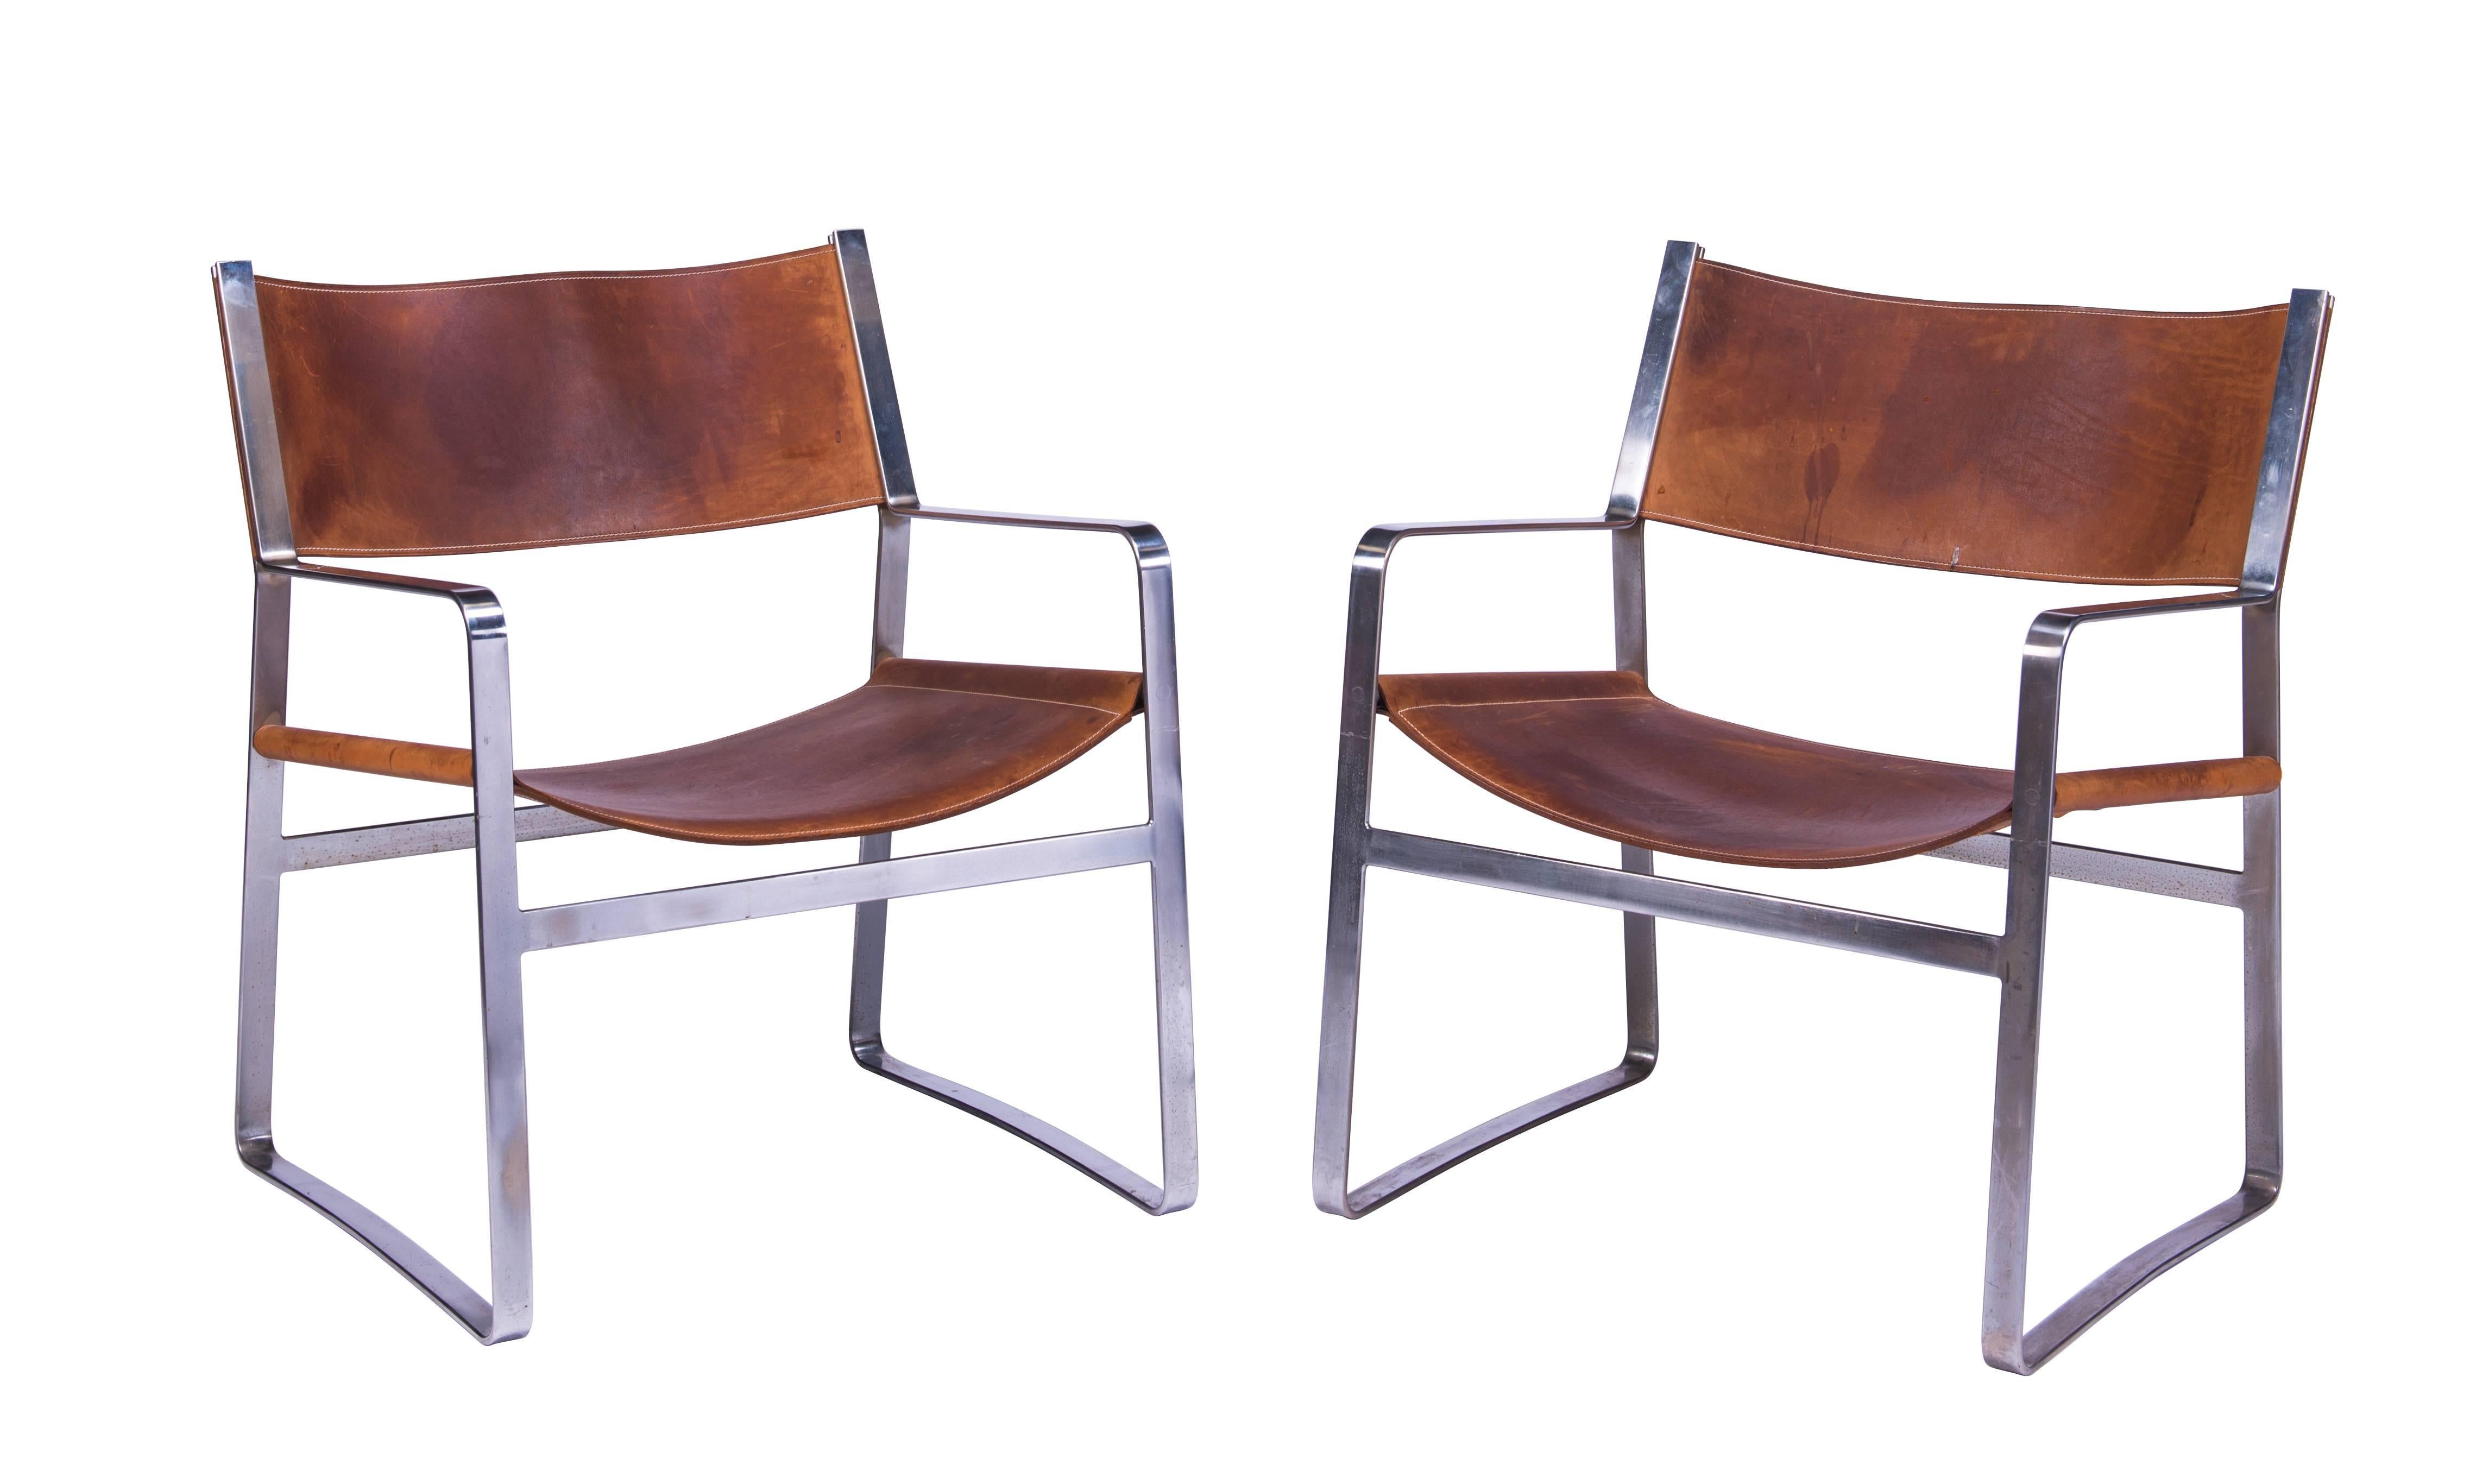 Paire de chaises longues Wegner Modèle JH 812 très rares et bien construites, en acier chromé avec cuir selle d'origine, vers 1970. Documenté dans Hans J. Wegner's 100 Chairs, Oda, p. 191. Belle patine naturelle sur les sièges et les dossiers en